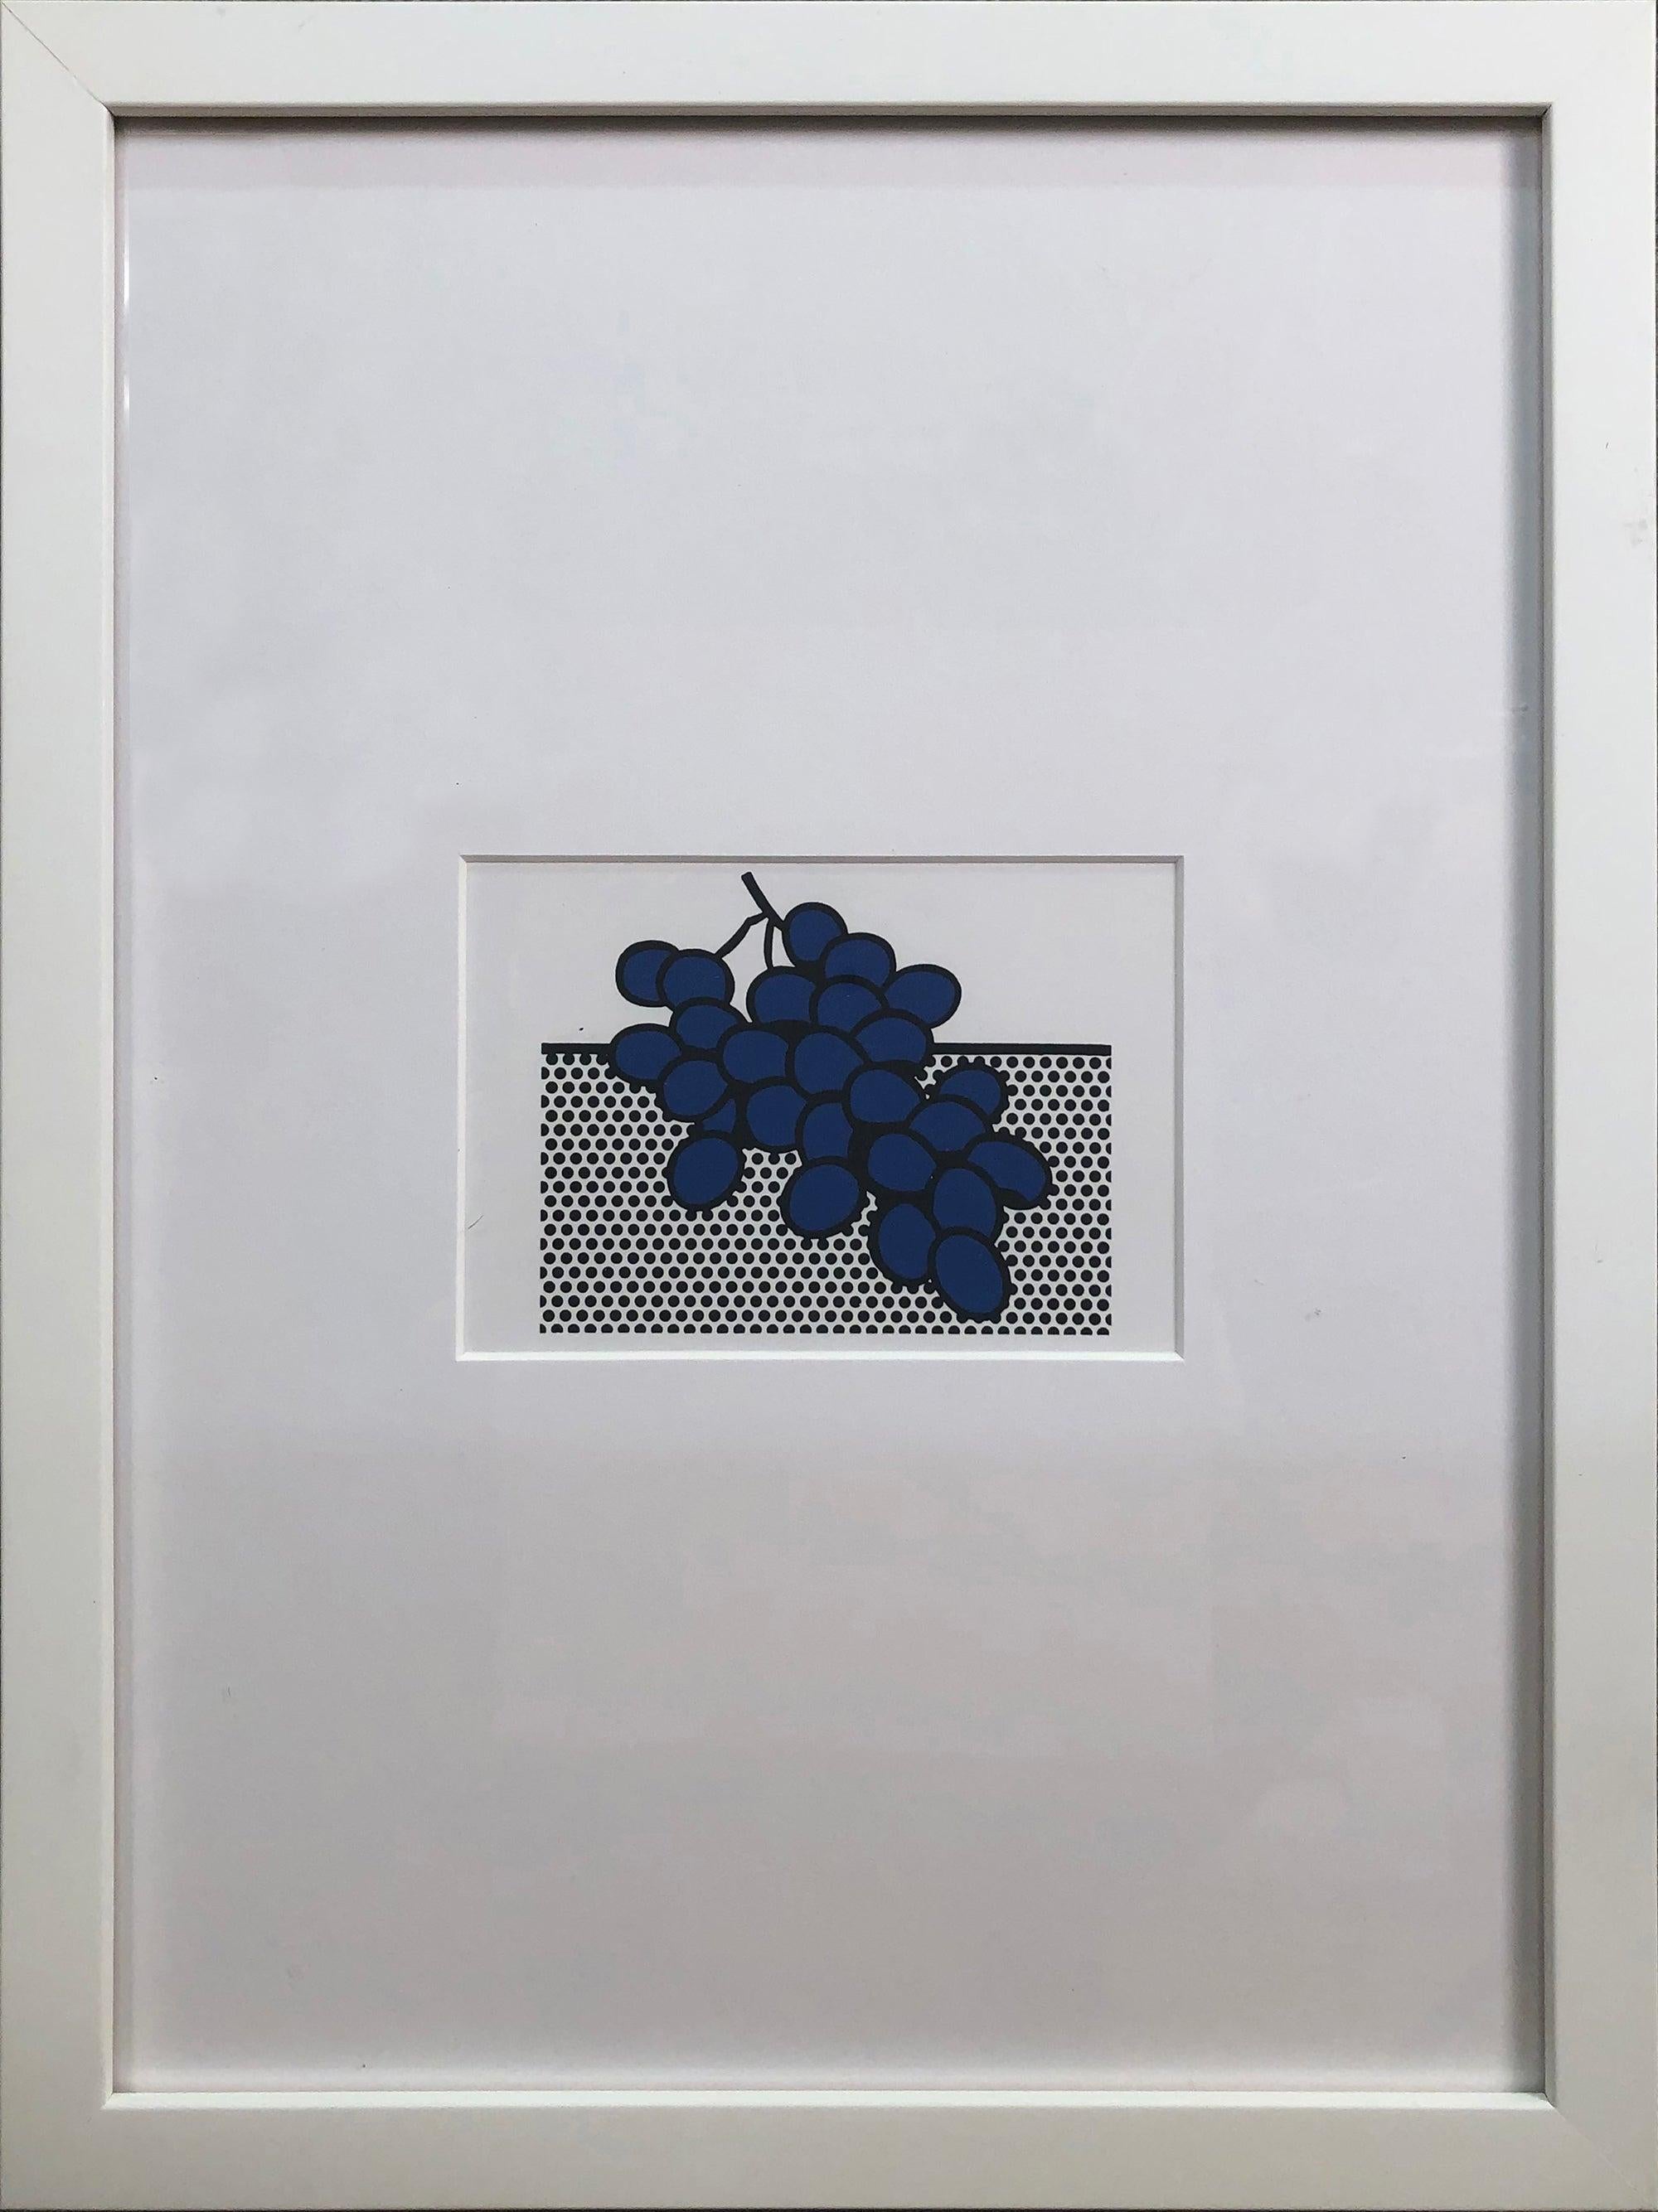 (after) Roy Lichtenstein Still-Life Print - 1972 Roy Lichtenstein 'Blue Grapes' Pop Art Blue, Black, White France Lithograph F